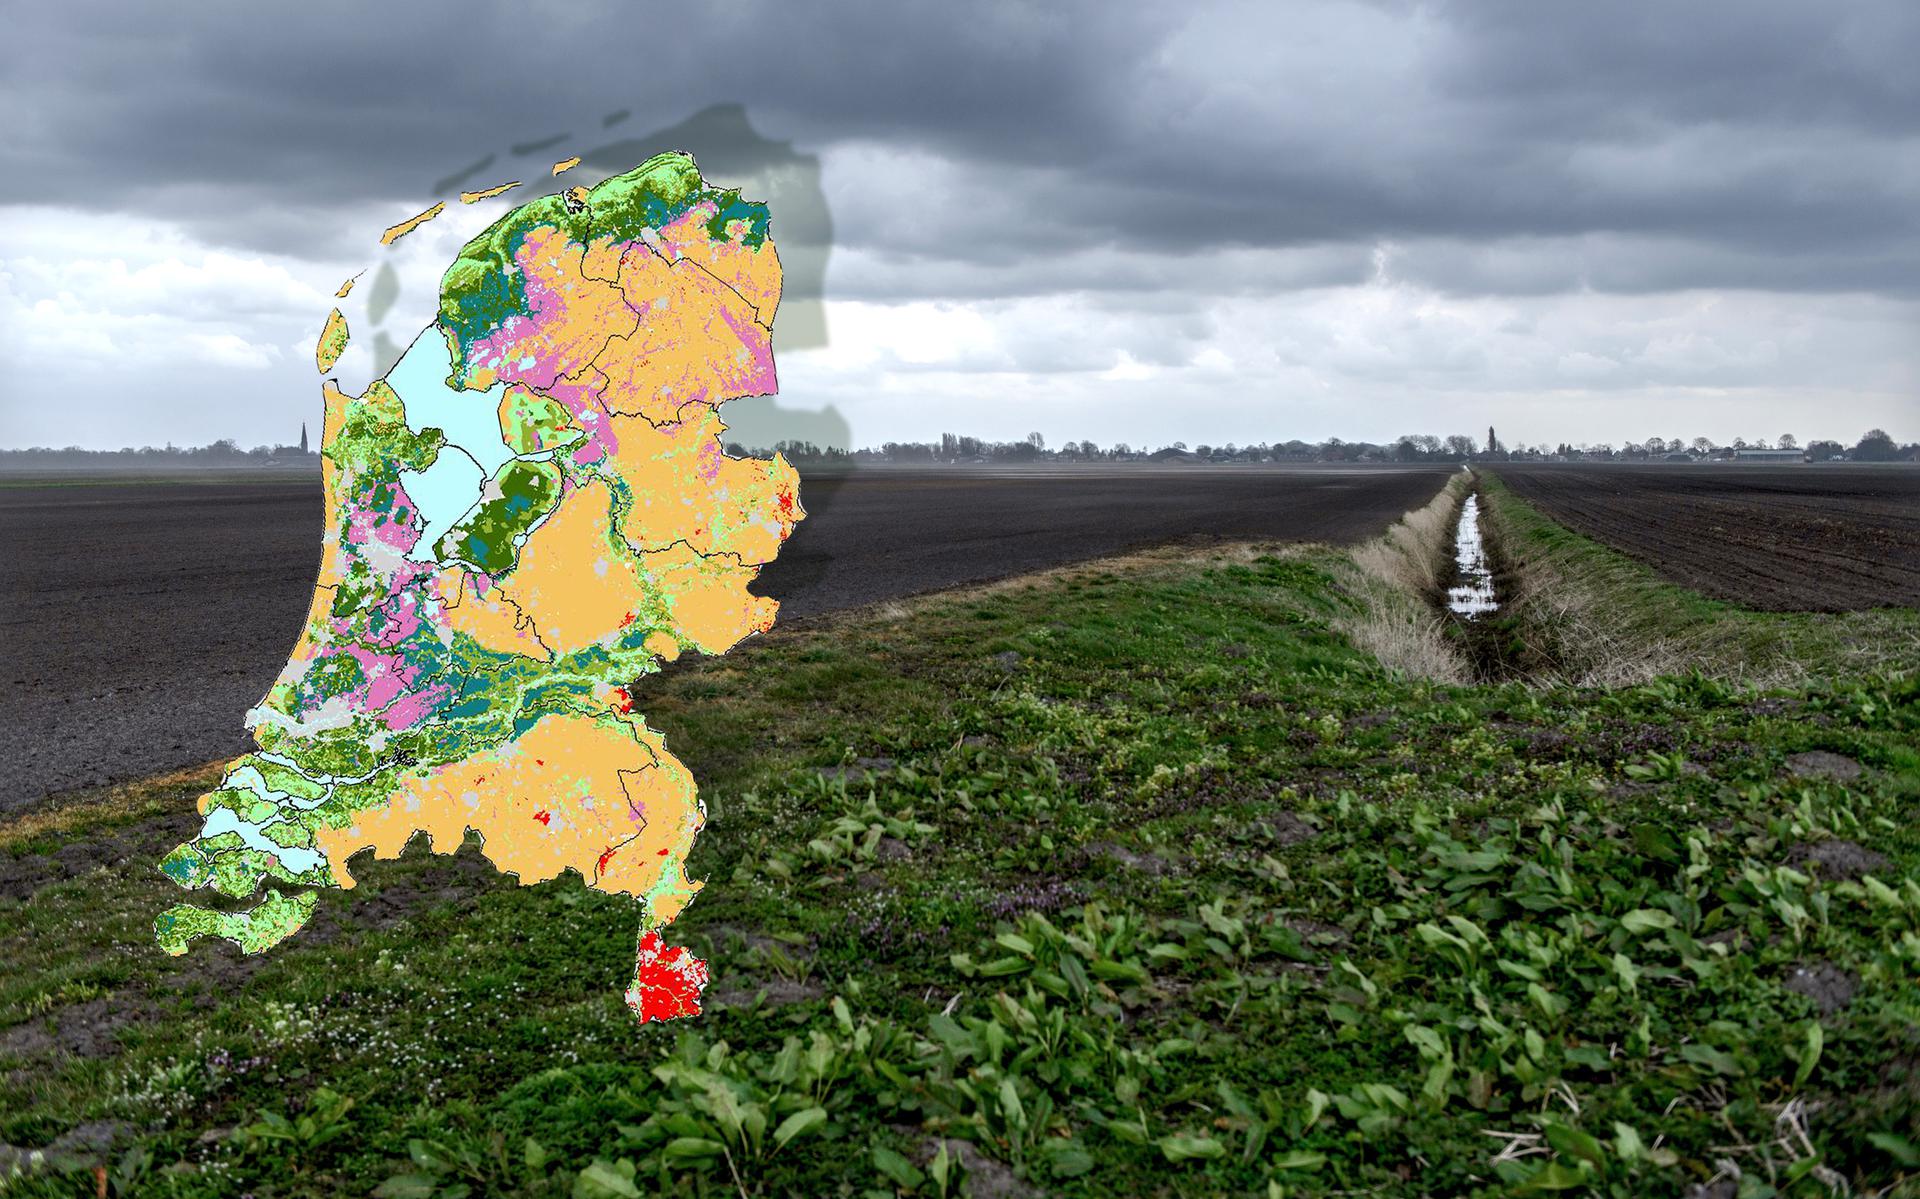 De veengrond van de Veenkoloniën tijdens een stormachtige en donkere dag. Op de achtergrond Wildervank en rechts een veenwijk, een waterloop aangelegd tijdens de veenafgraving. Inzet: een kaart met in het roze de veengronden.